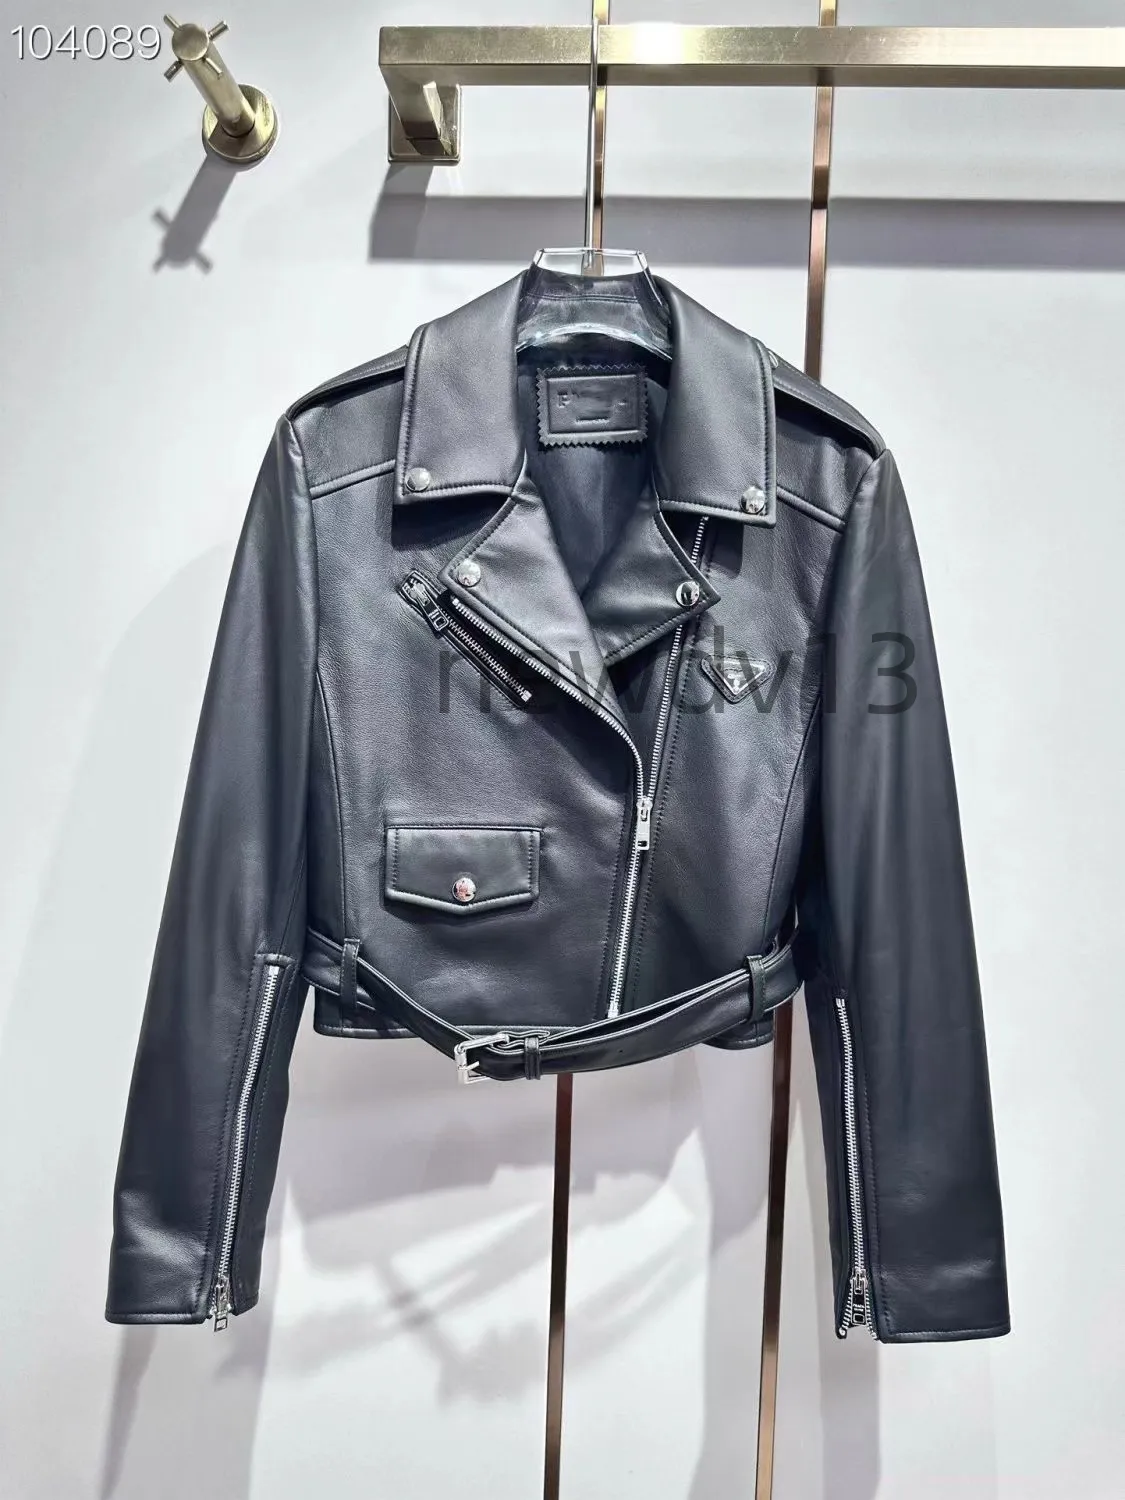 새로운 패션 중장기 슬림 한 적합성 기질 캐주얼 오토바이 짧은 재킷 가죽 자켓 레이디 패션